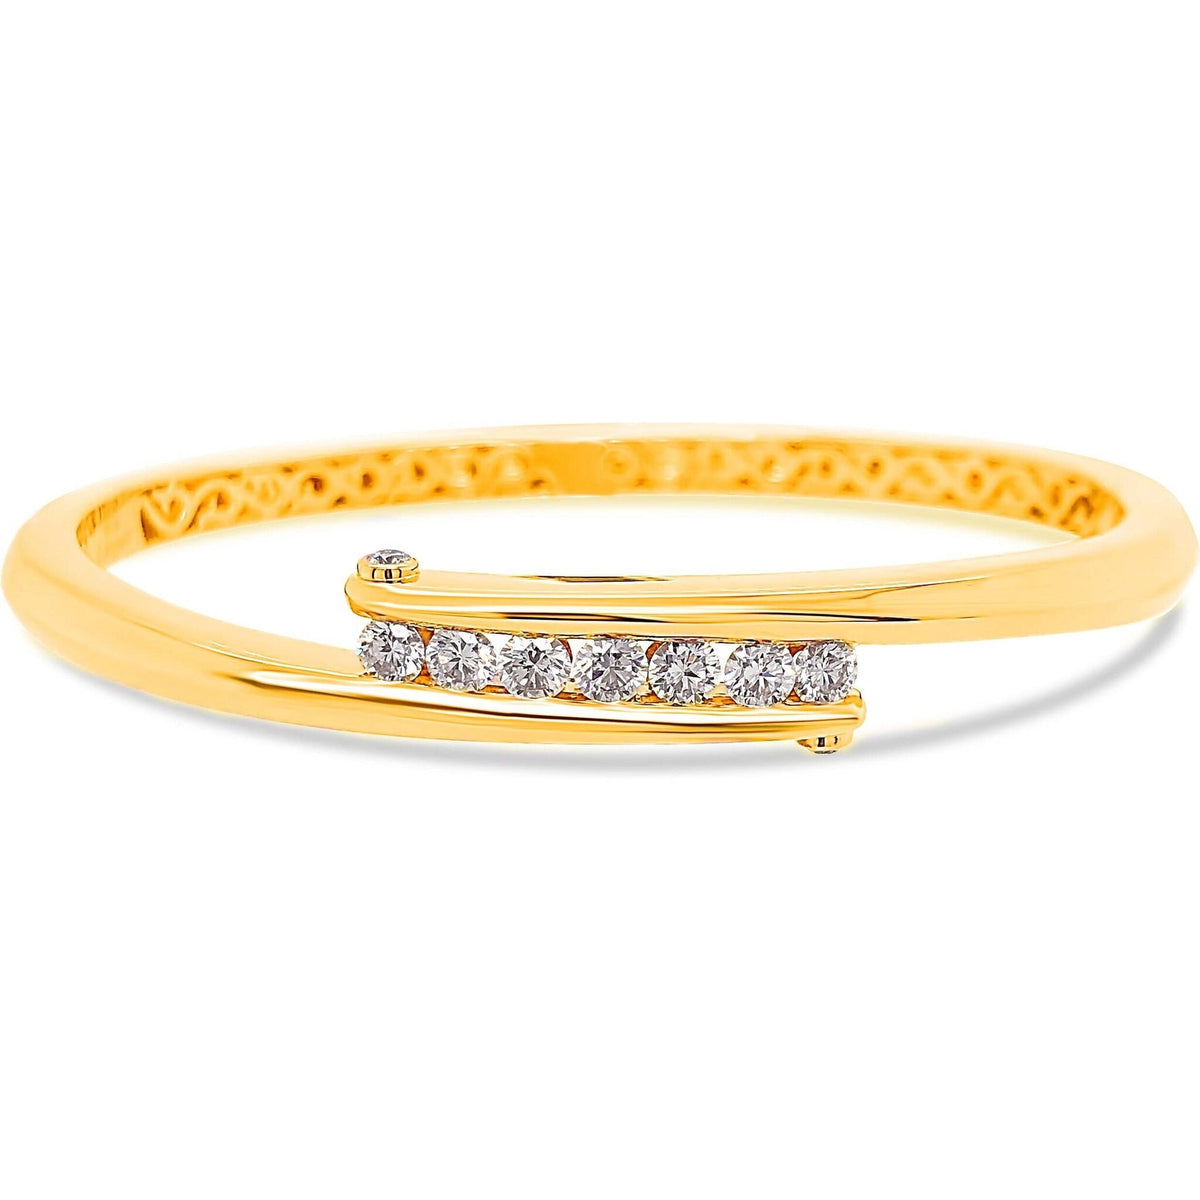 Charles Krypell Diamond Overlap Bracelet in Yellow Gold